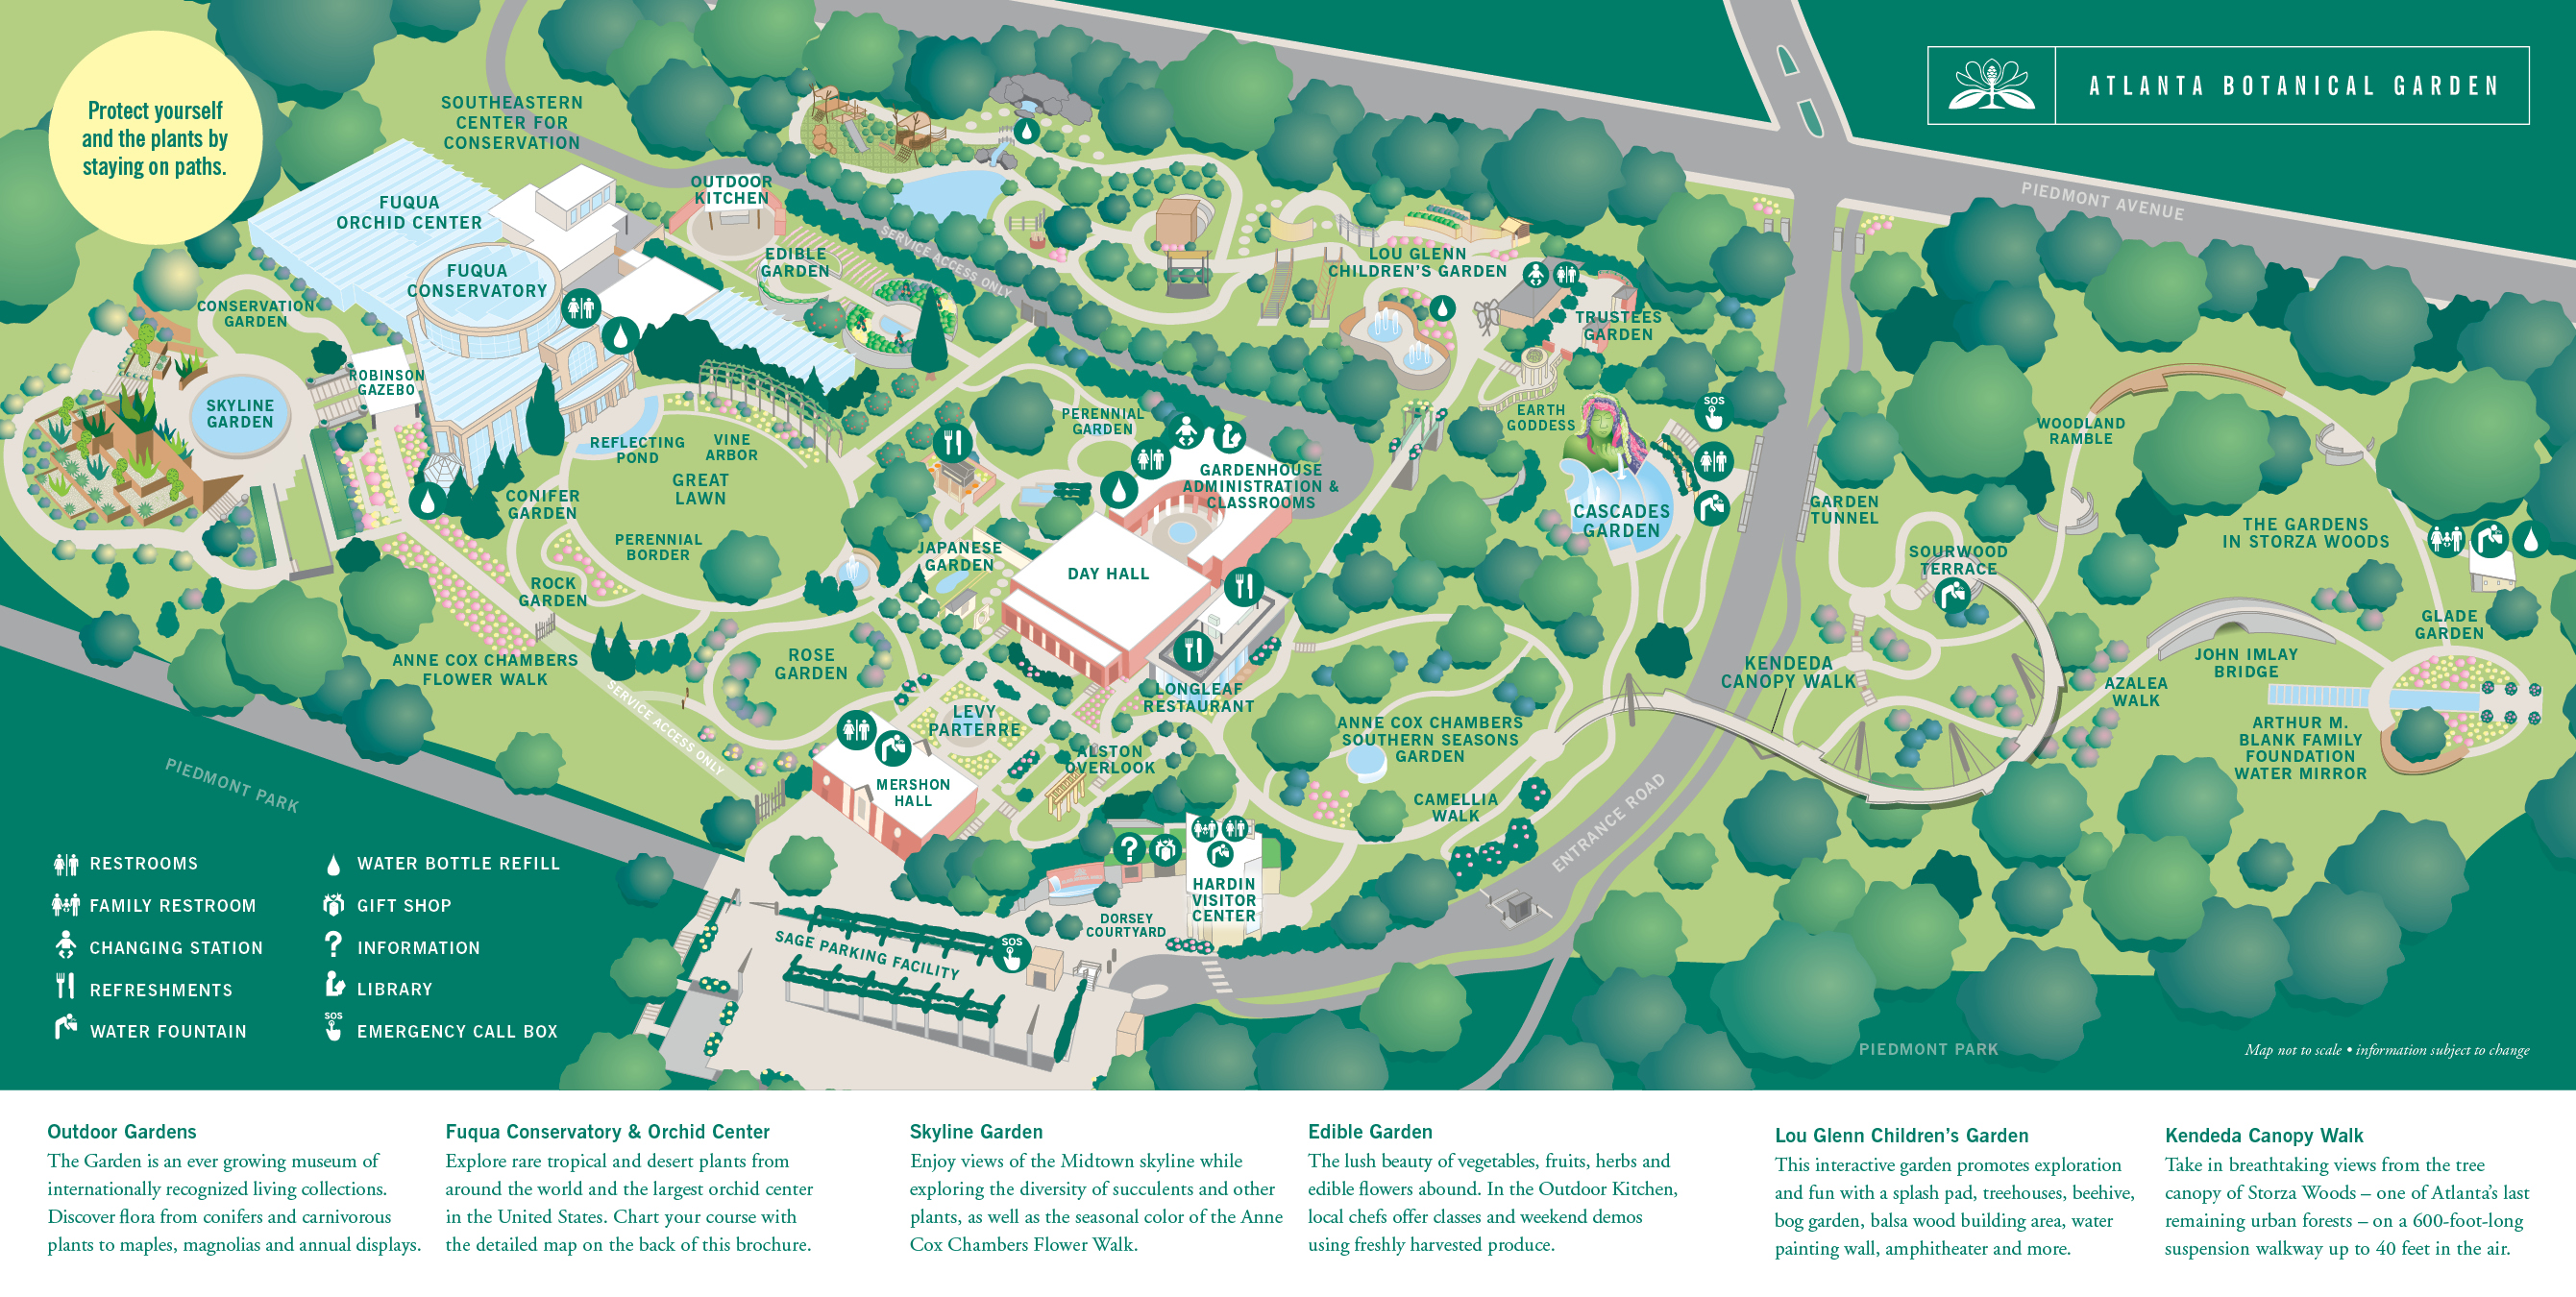 Atlanta Botanical Garden Plan Your Visit